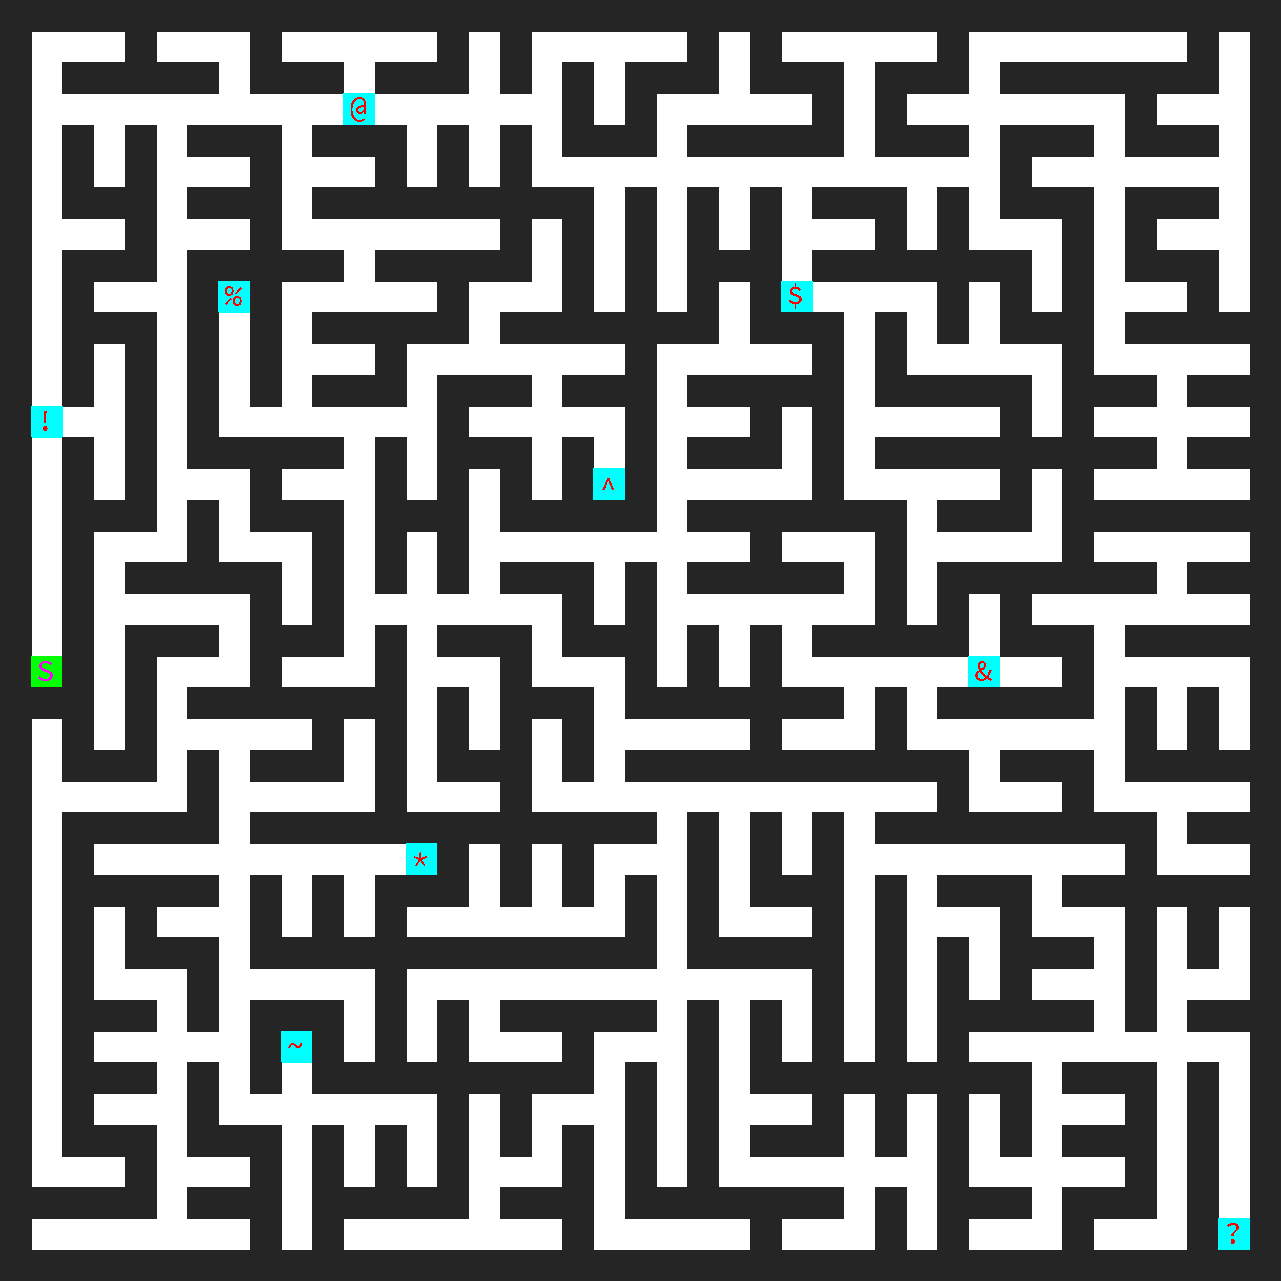 Maze Map